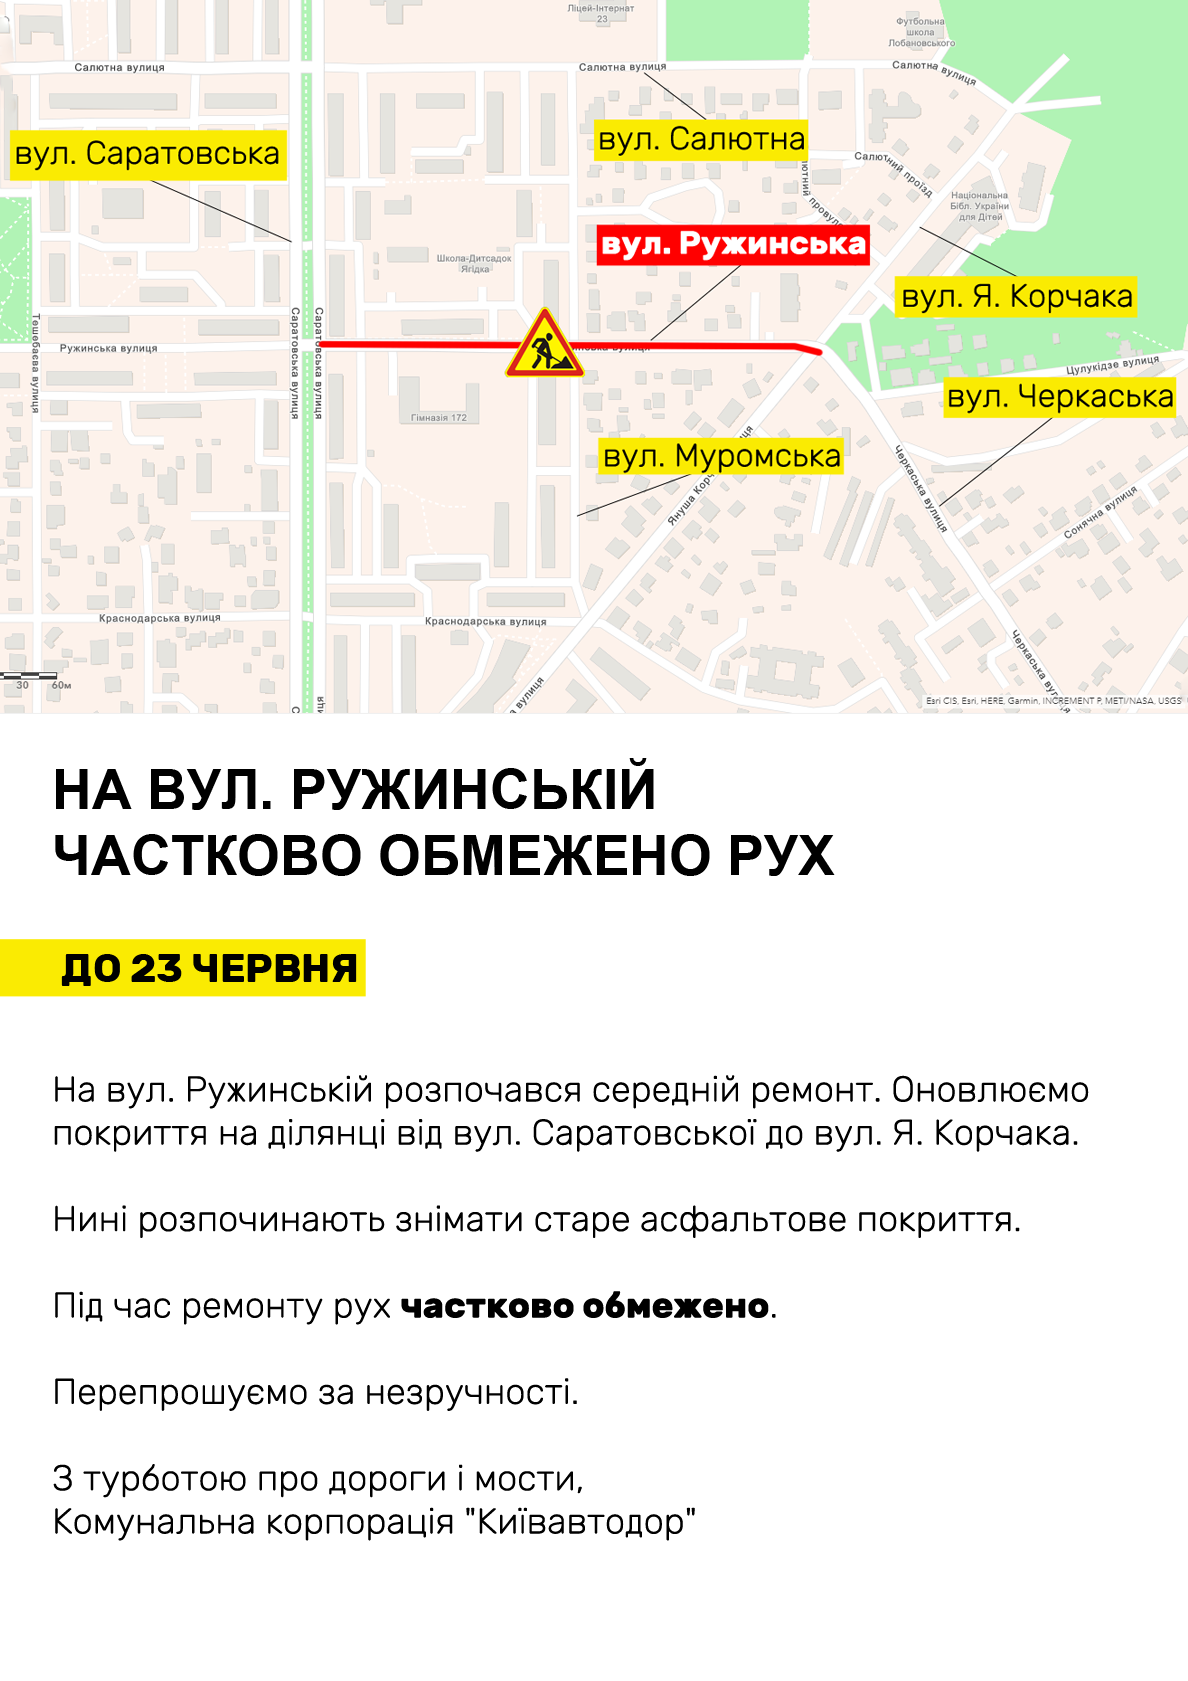 Ремонт дорог: где в Киеве ограничат движение до конца июня